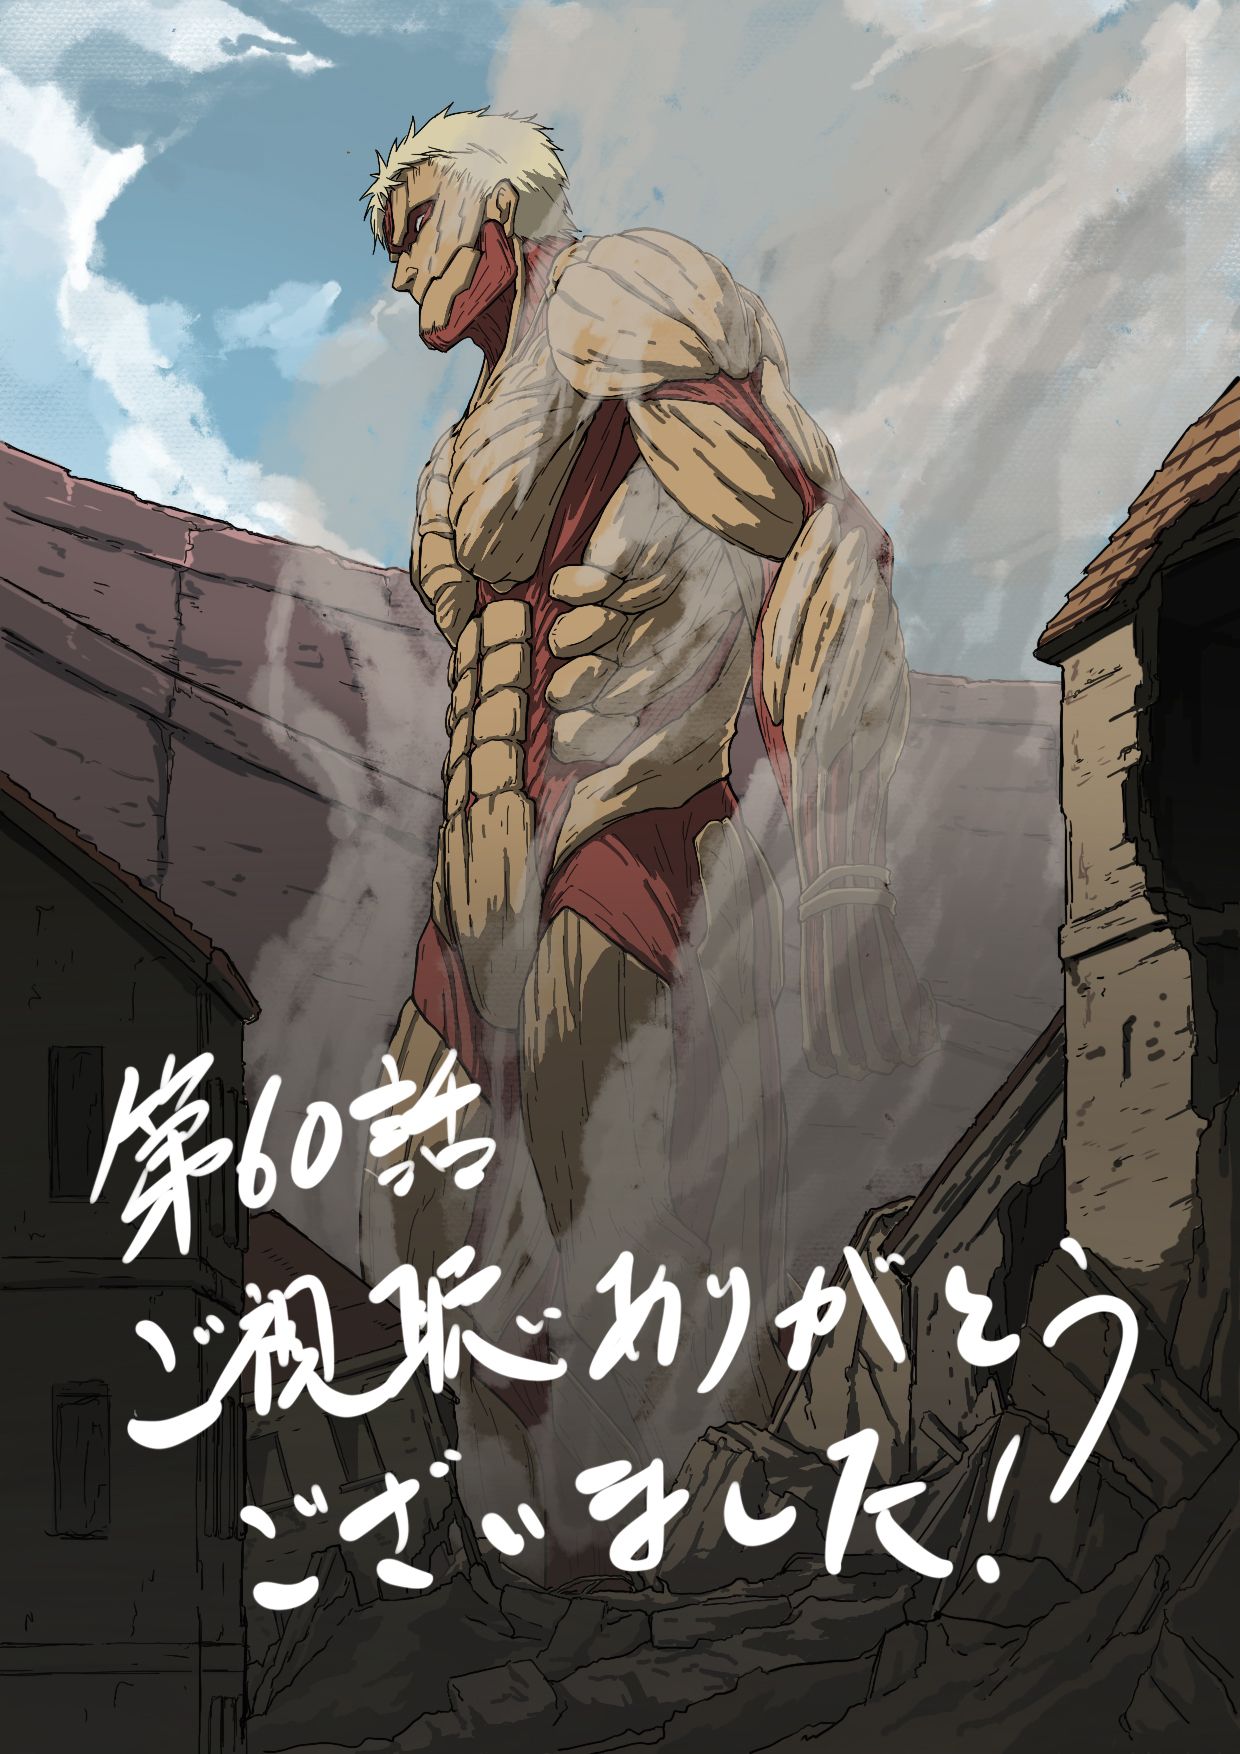 Armored Titan on Titan Anime Image Board